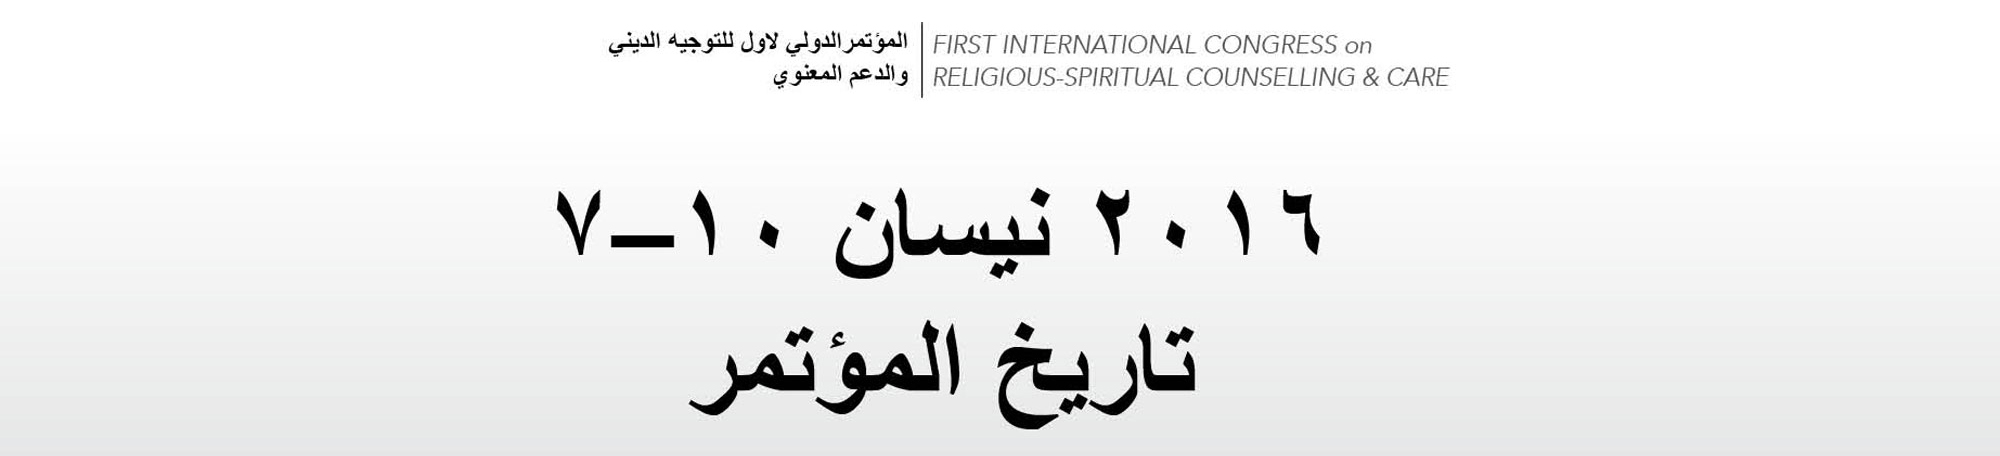 المؤتمرالدولي-الأول-للتوجيه-الديني-والدعم-المعنوي (2)